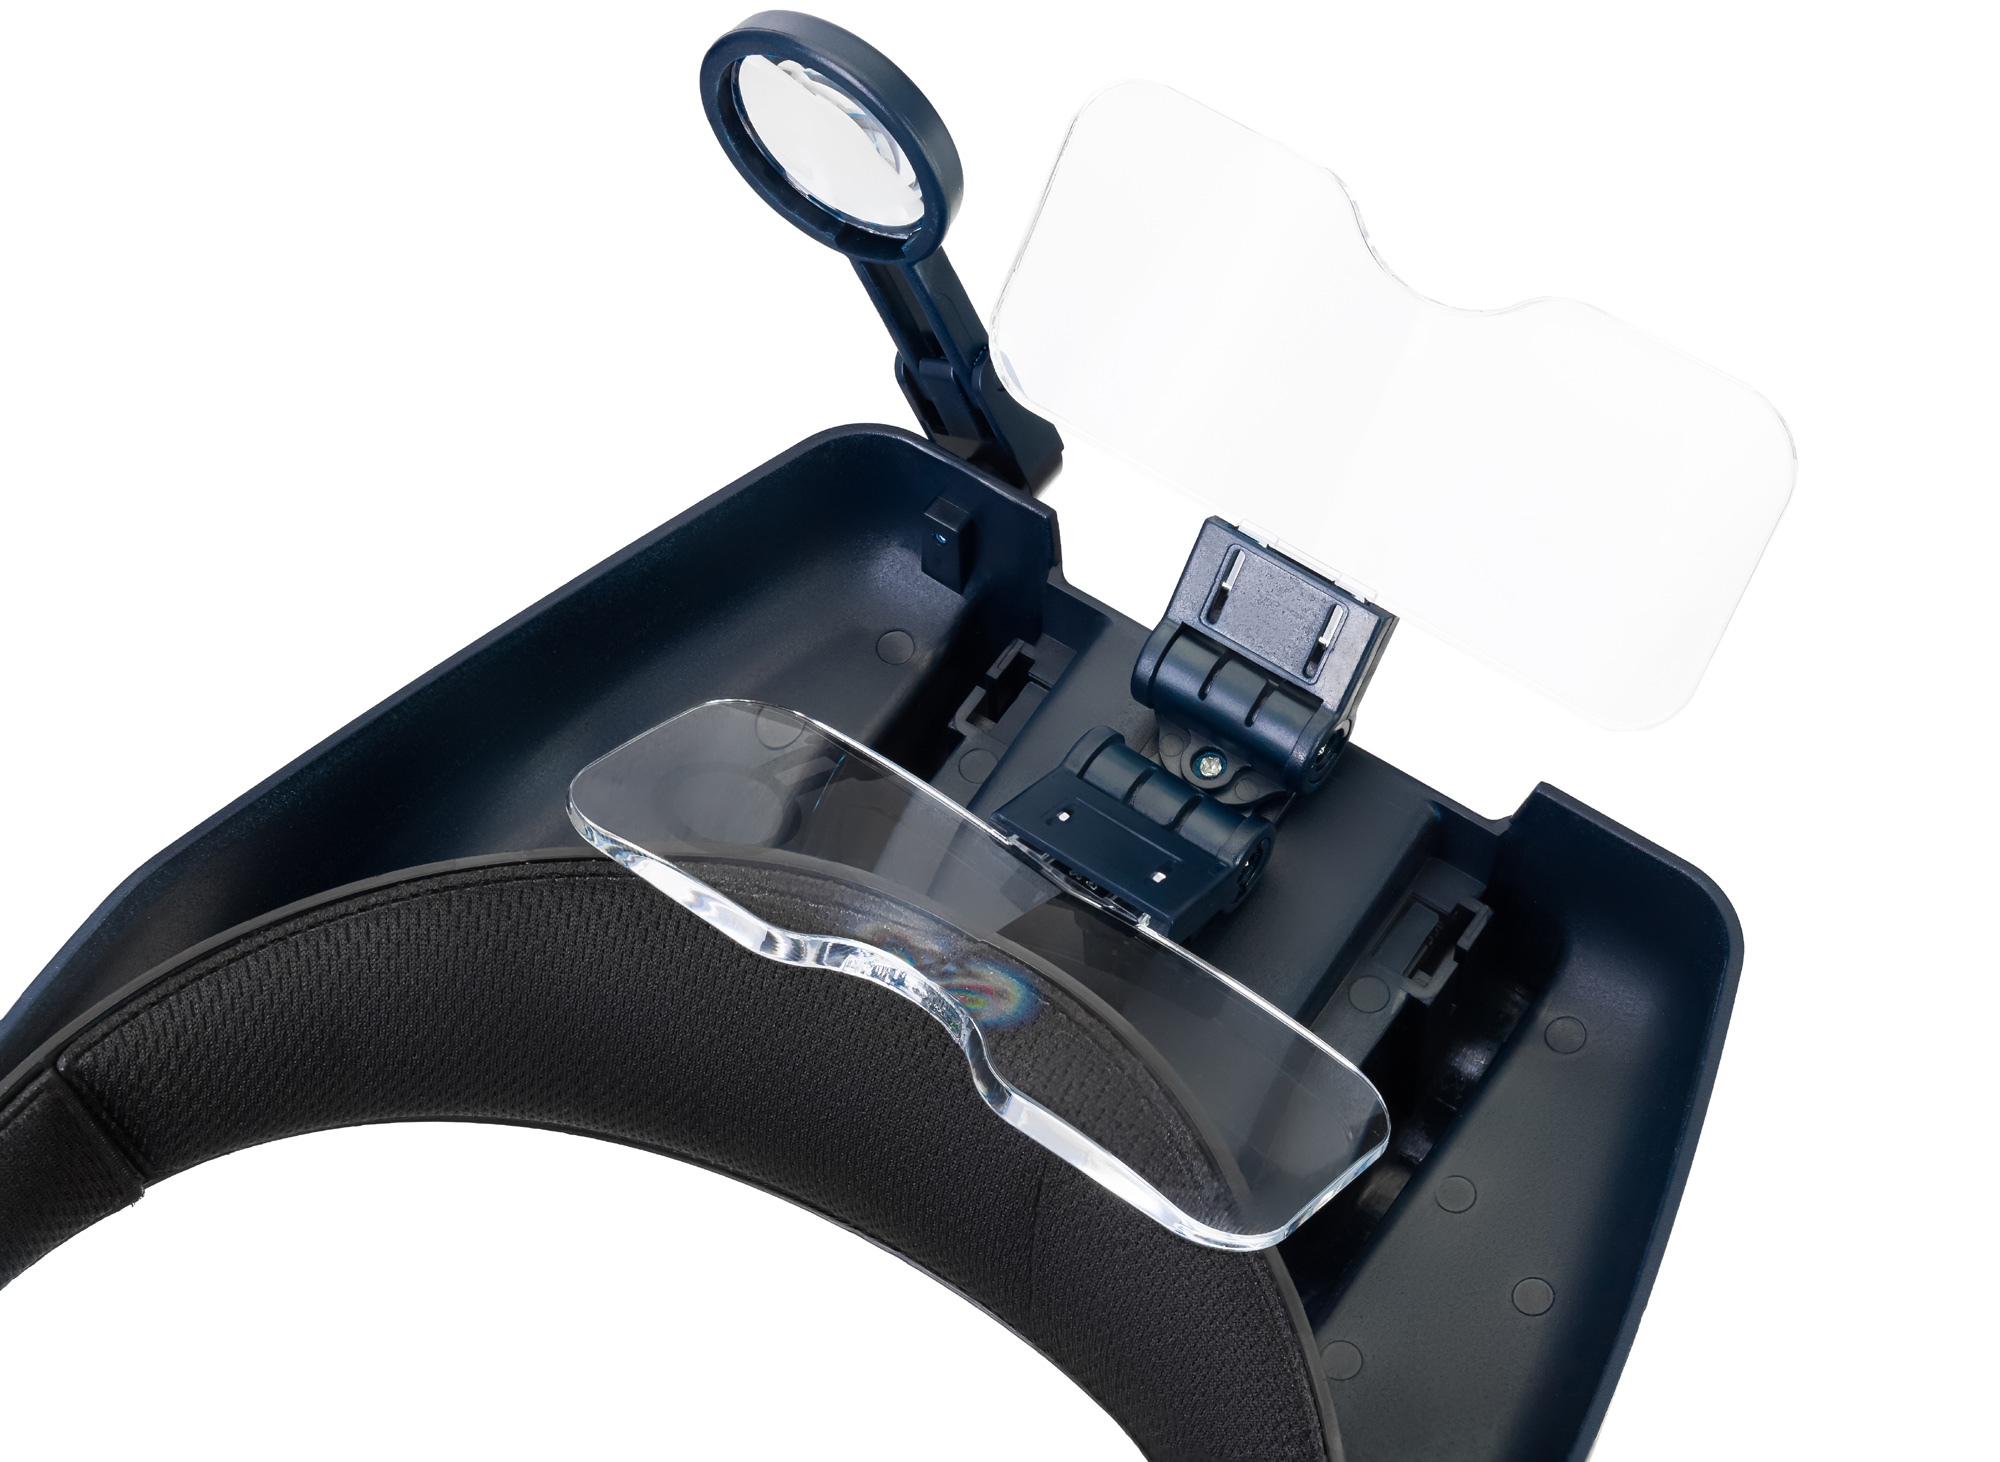 Optická soustava lupy Discovery Crafts DHR 40 se skládá ze 2 obdélníkových čoček a 1 kruhové čočky pro pravé oko.